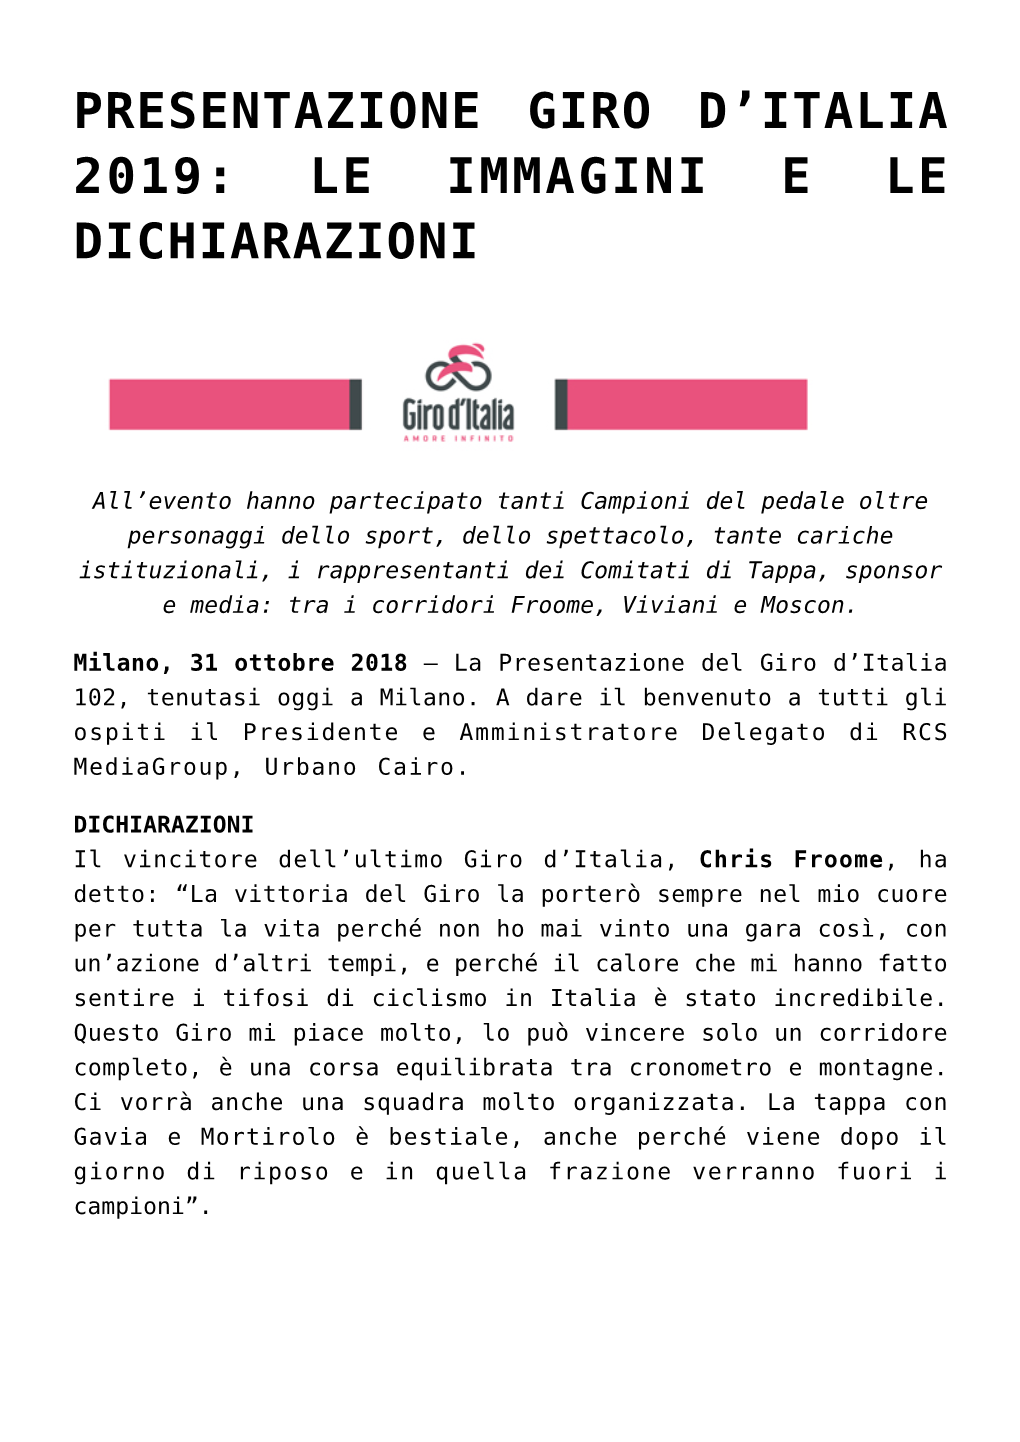 Presentazione Giro D'italia 2019